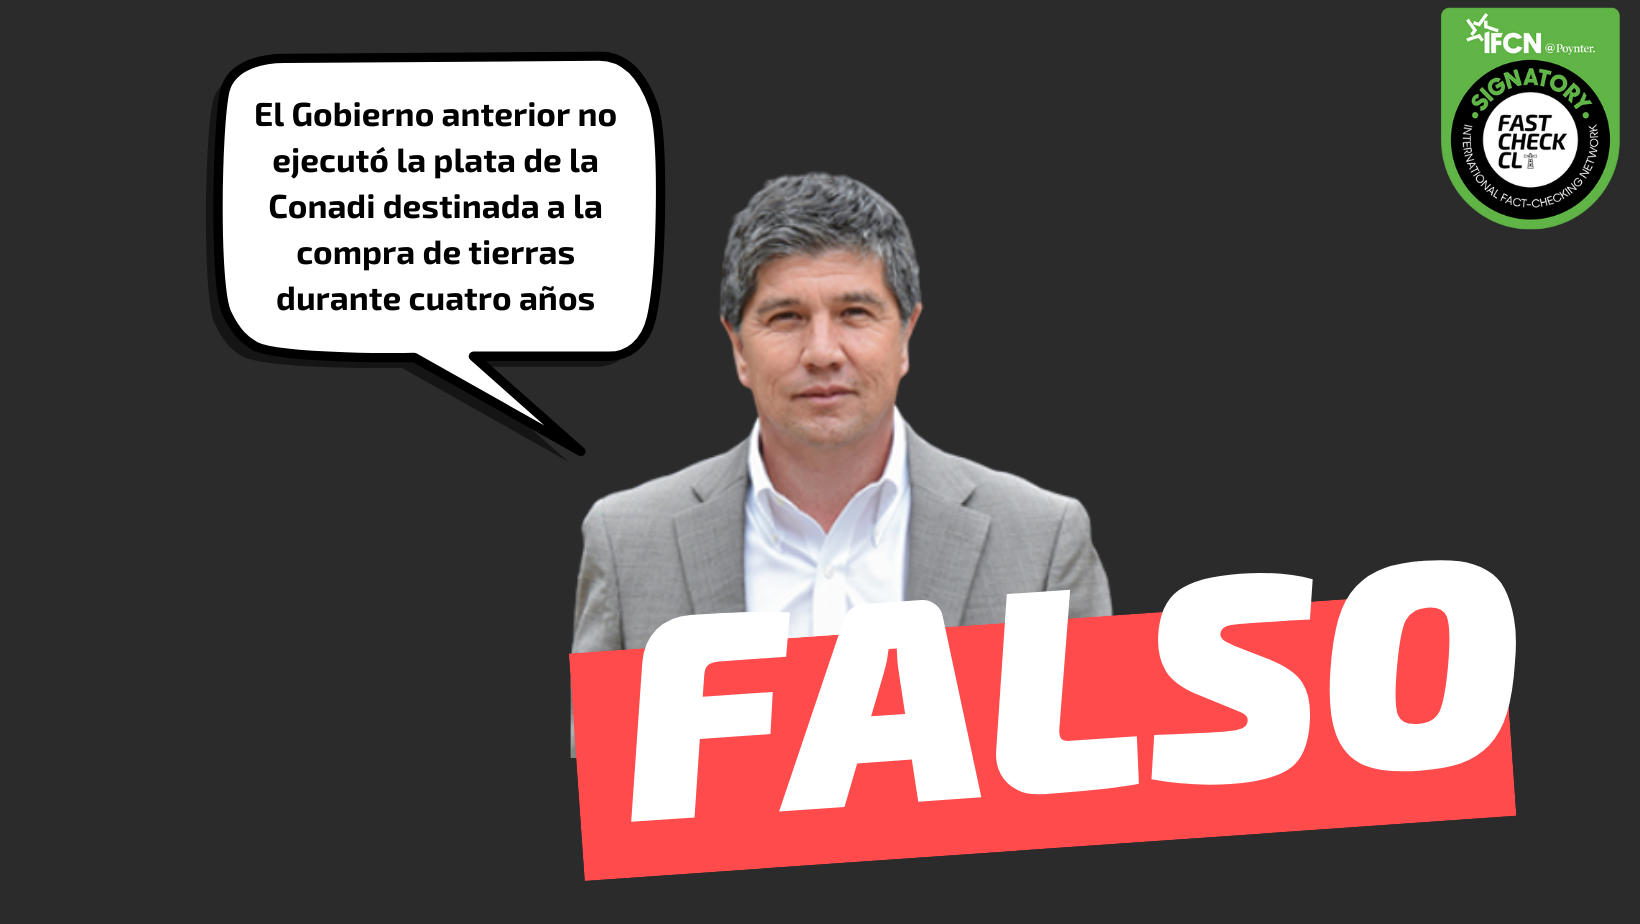 You are currently viewing “El Gobierno anterior no ejecutó la plata de la Conadi destinada a la compra de tierras durante cuatro años”: #Falso